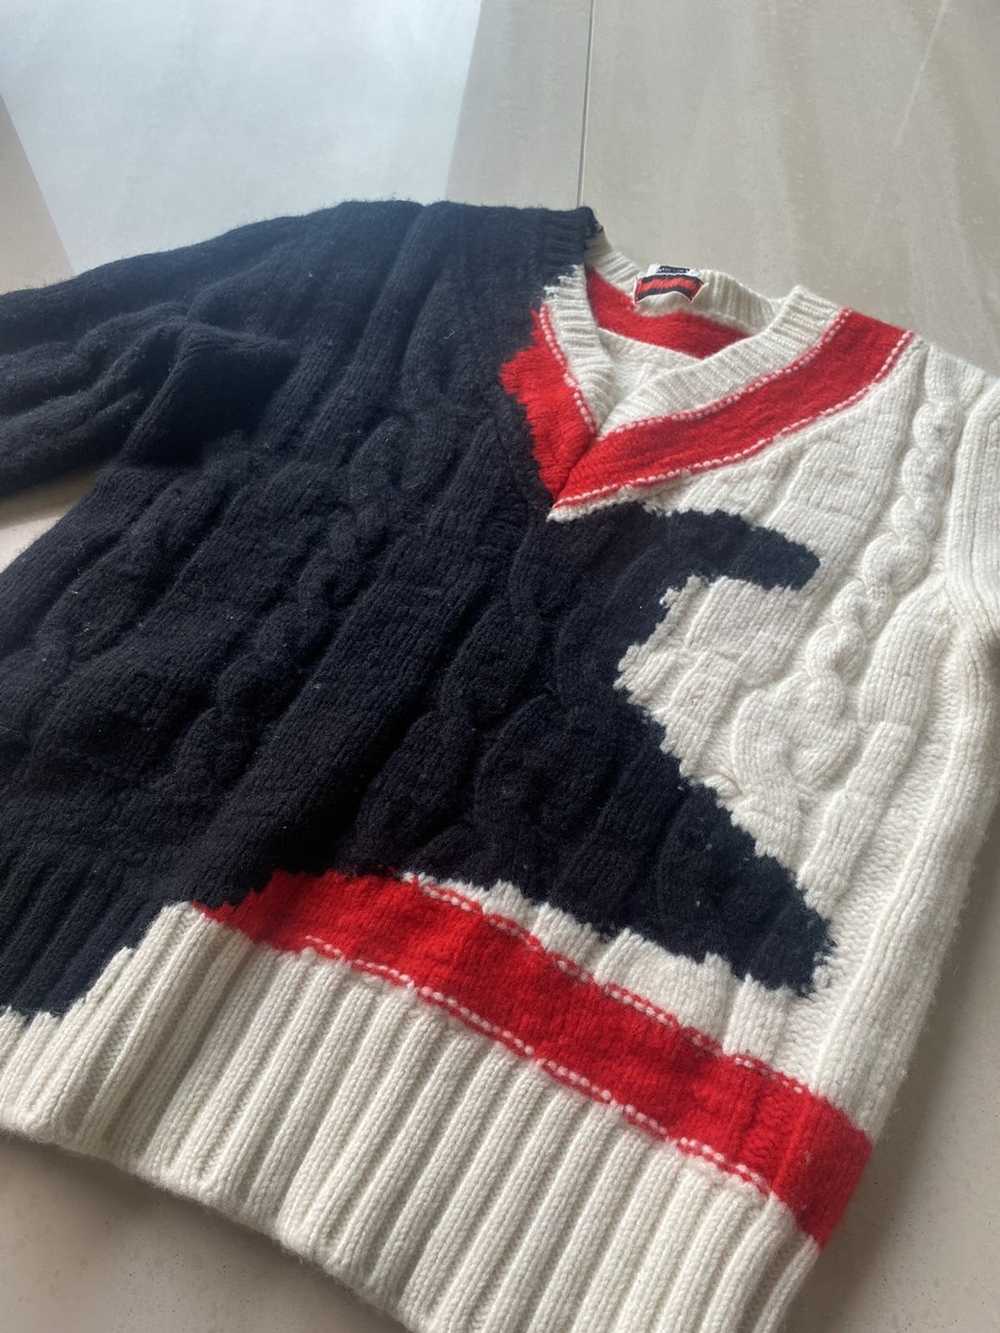 Alexander McQueen Bleeding sweater - image 1